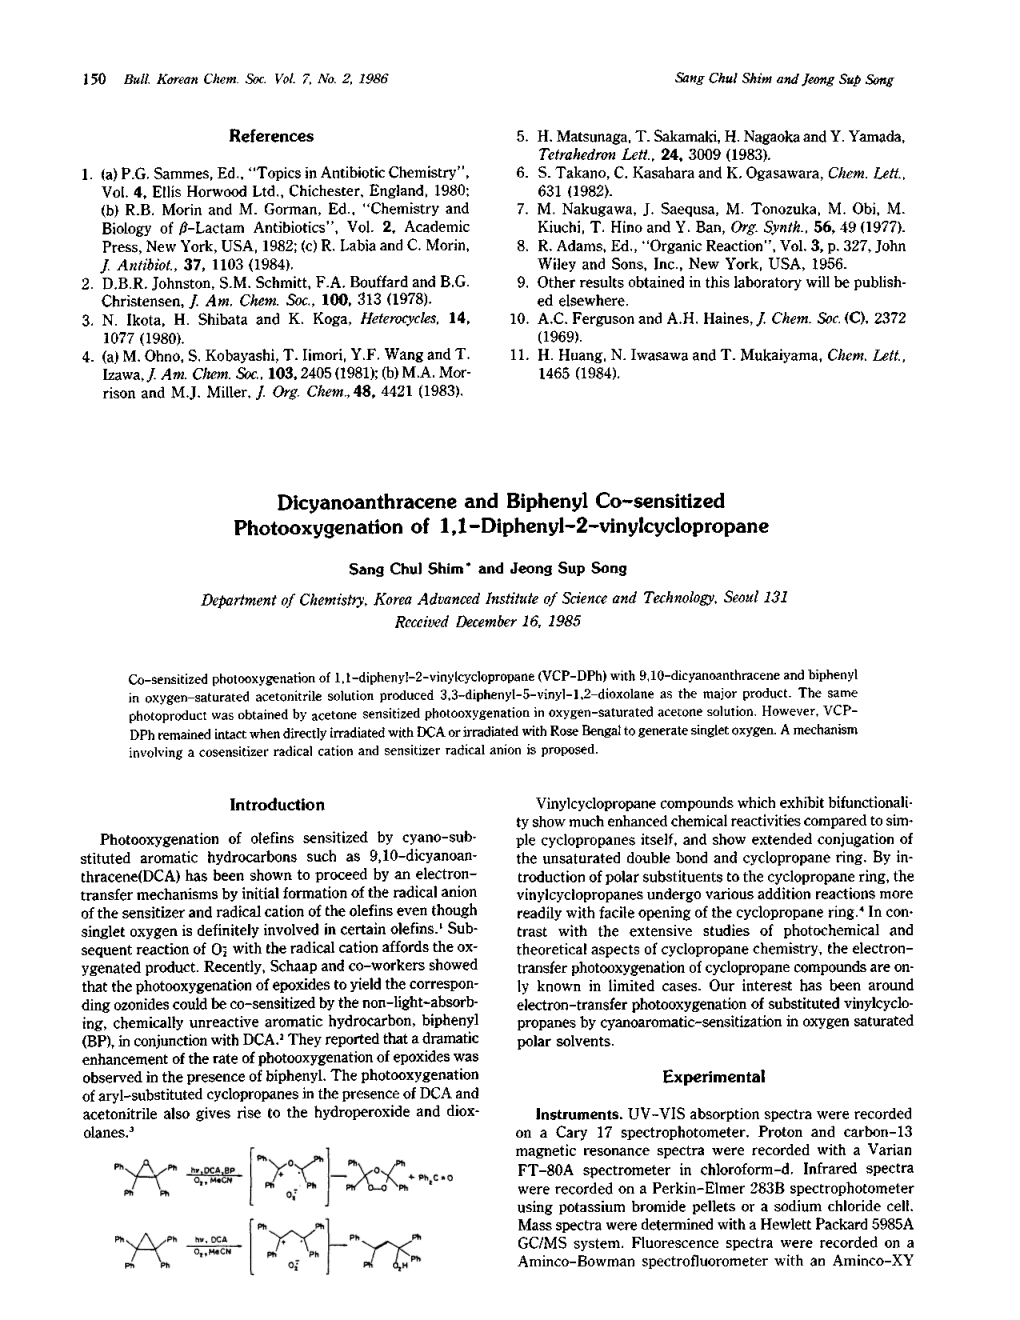 Dicyanoanthracene and Biphenyl Co-Sensitized Photooxygenation of 1,1 -Diphenyl-2-Vinylcyclopropane